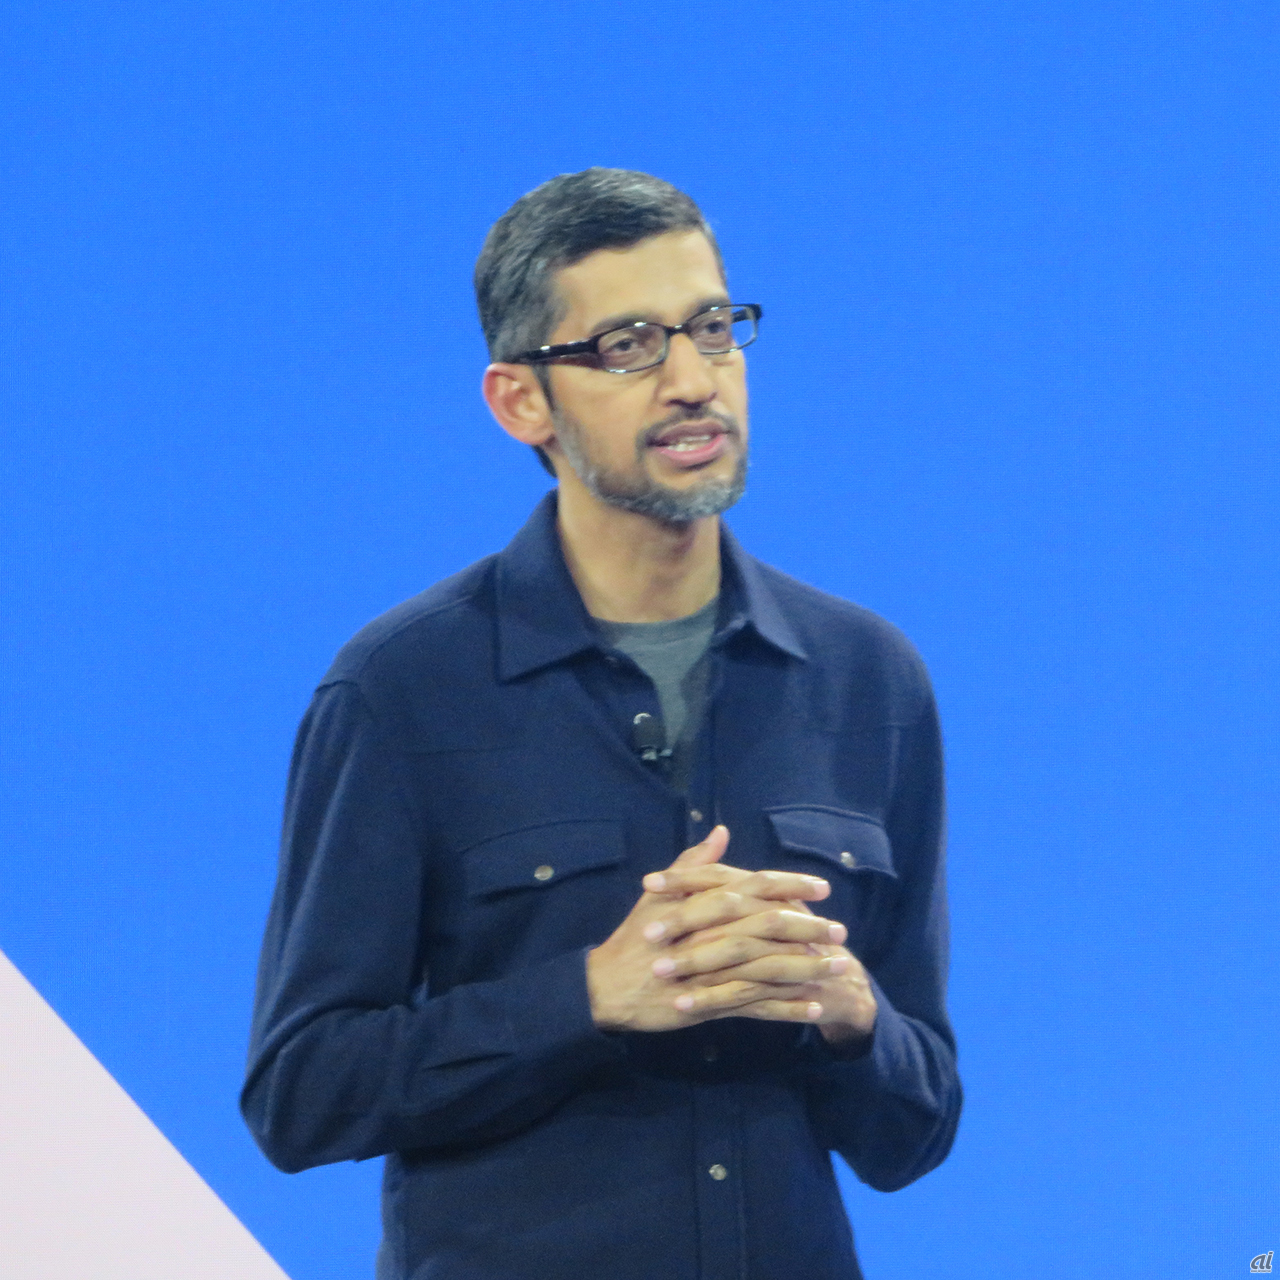 Google CEOのSundar Pichai氏も登場。「Google自身もAIで再構築している。Google Maps、Gmail、Androidの全てで“AIファースト”のアプローチを取る」という。「われわれが数年掛かりで進めてきた高度な研究を、全員が利用できるようにする」と約束した